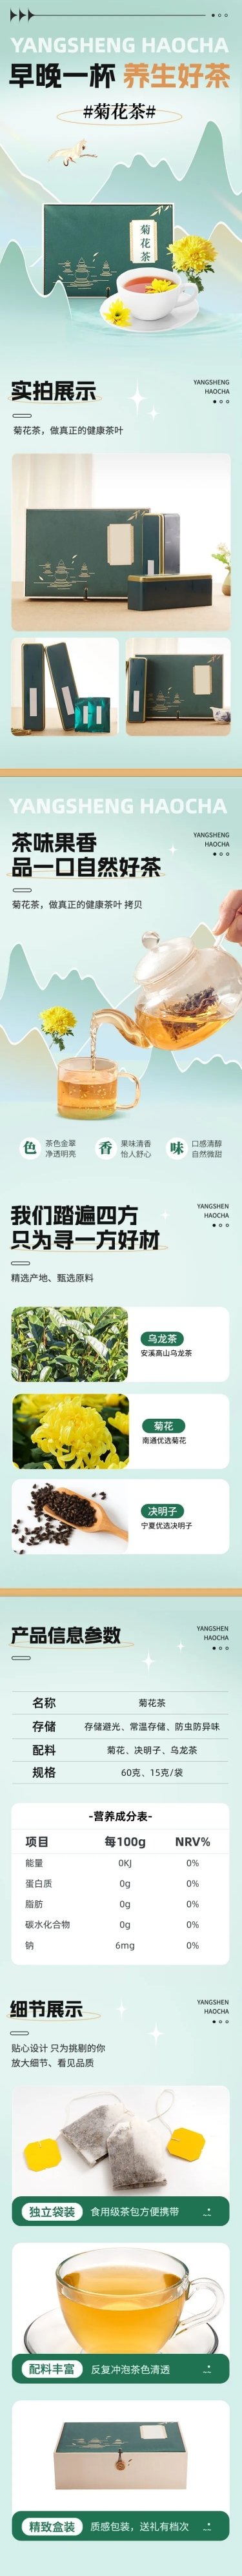 电商食品生鲜茶叶零食商品详情页预览效果